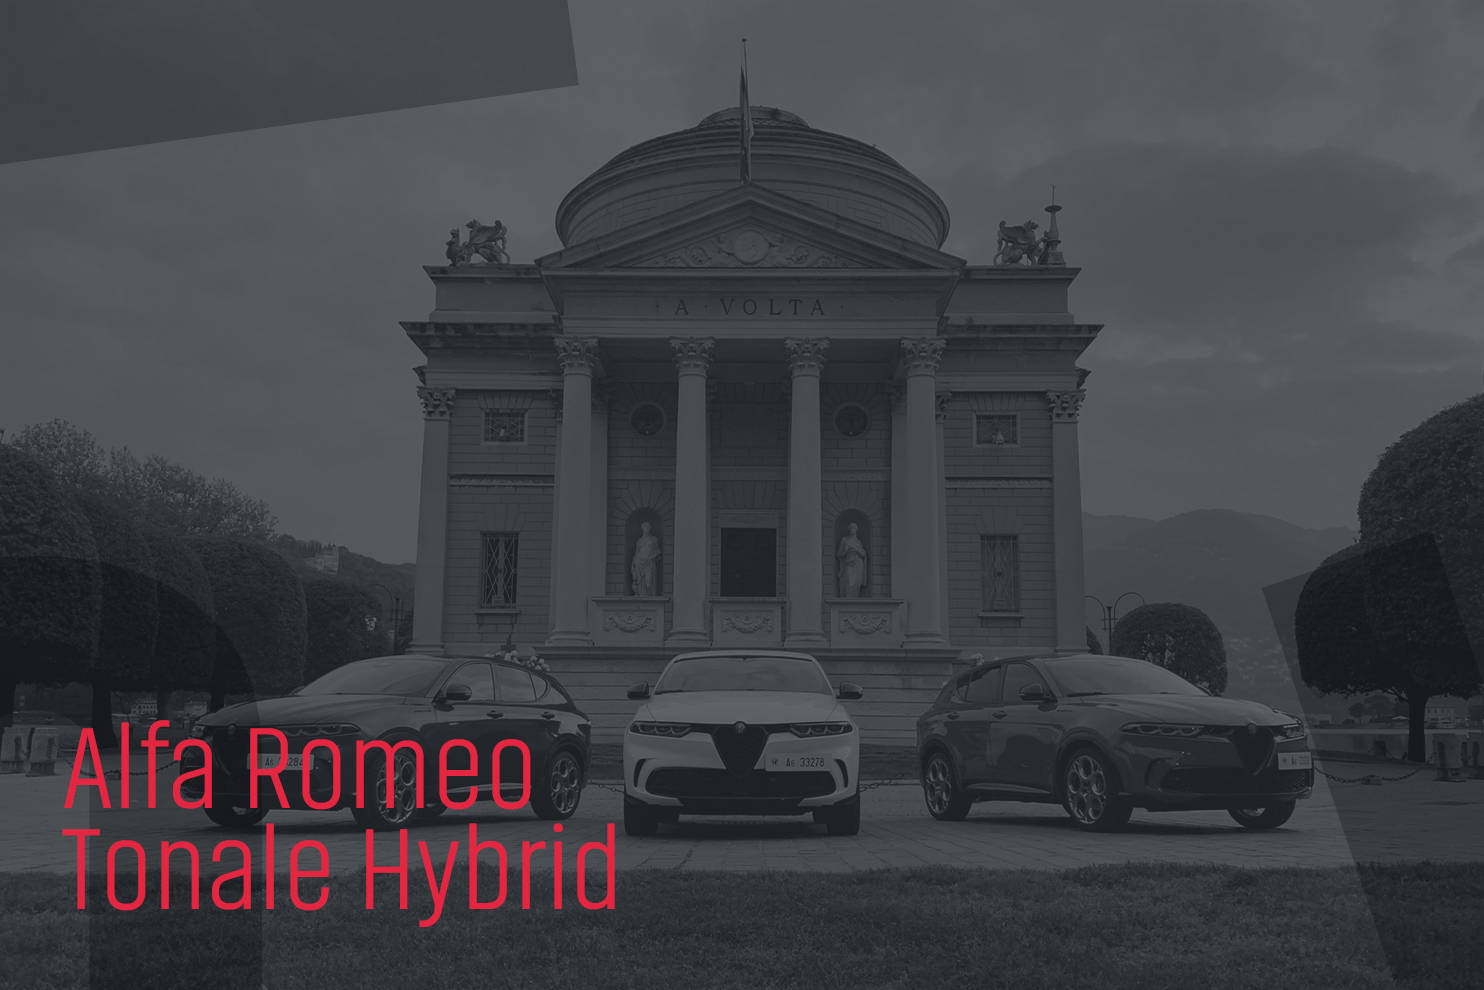 ZEROUNDICI_Alfa Romeo Tonale-4